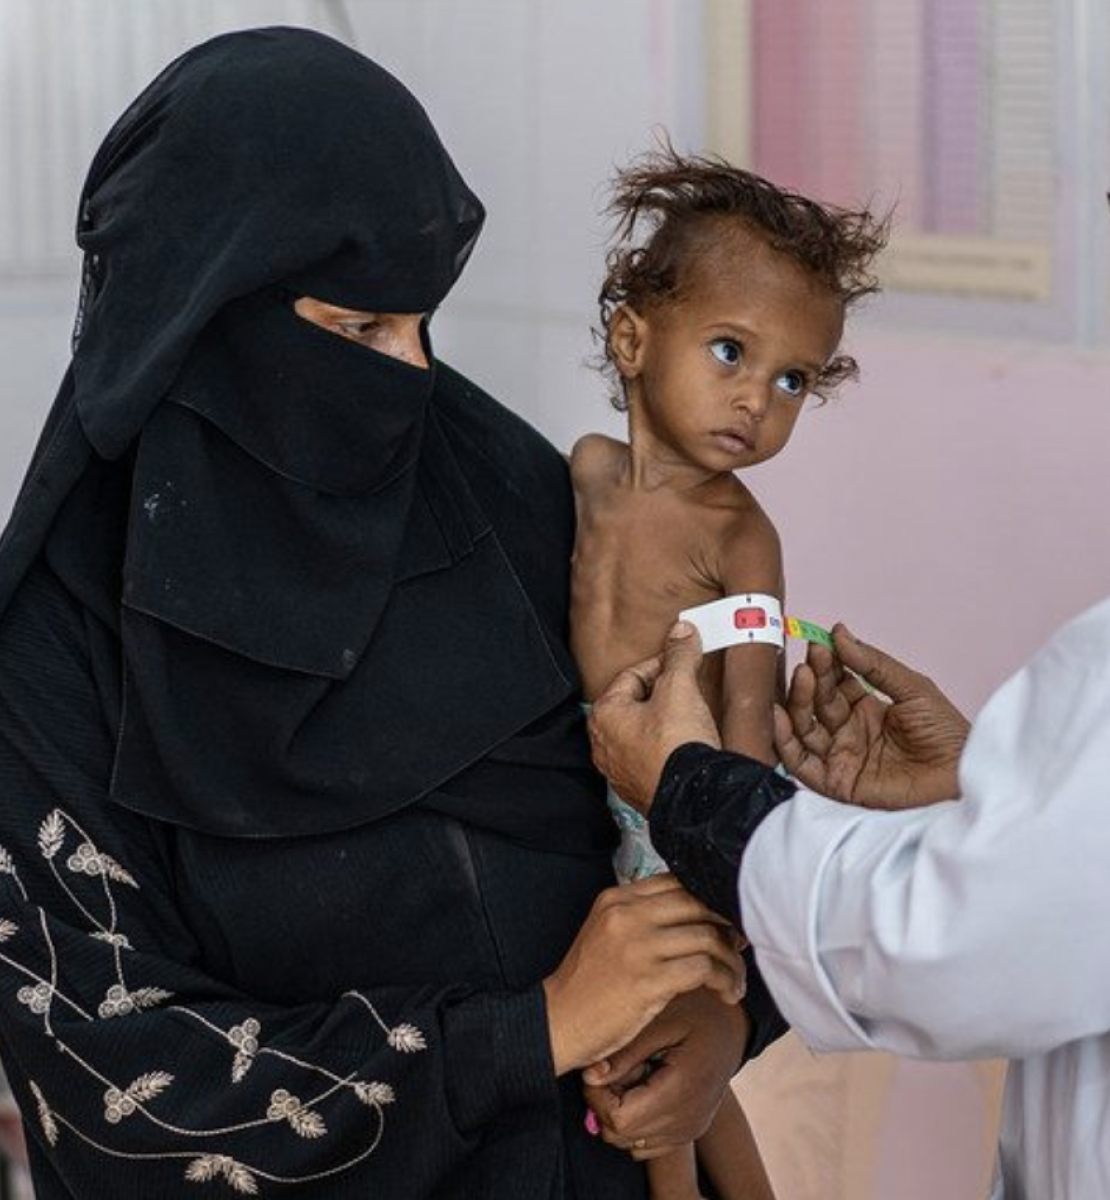 Une femme portant un voile noir lui couvrant le visage tient un enfant atteint de malnutrition sévère dans les bras, tandis qu'une infirmière mesure le diamètre du bras gauche de l'enfant.